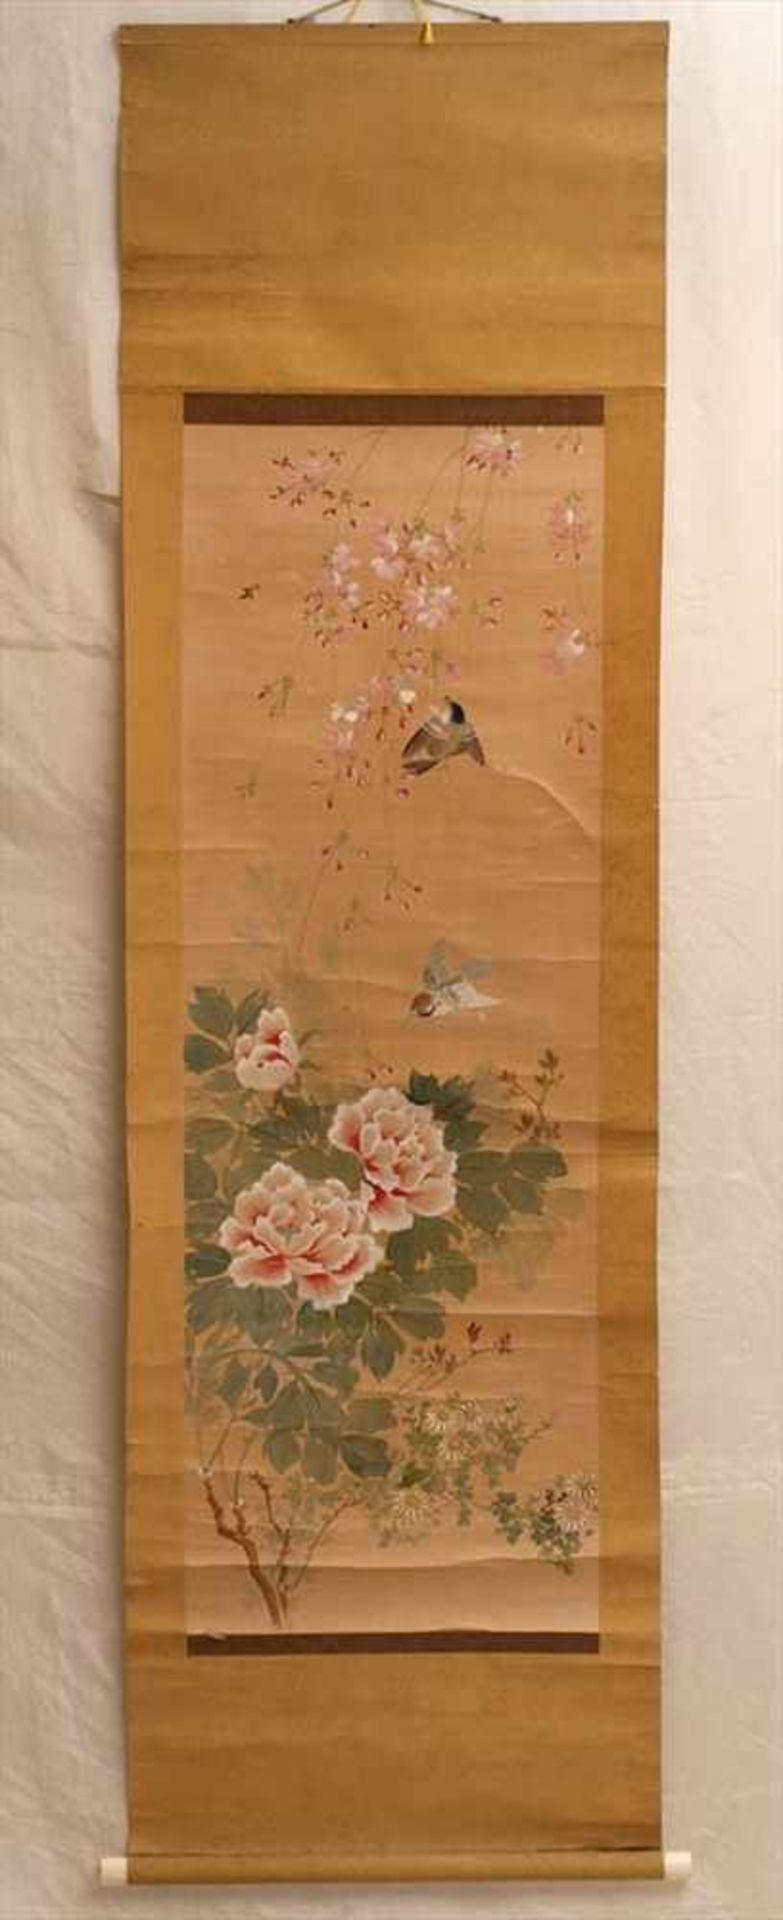 Farbholzschnitt, Japan, wohl 19.Jhdt.Blütenzweige mit teilweise überstickten Vögeln und Blüten.